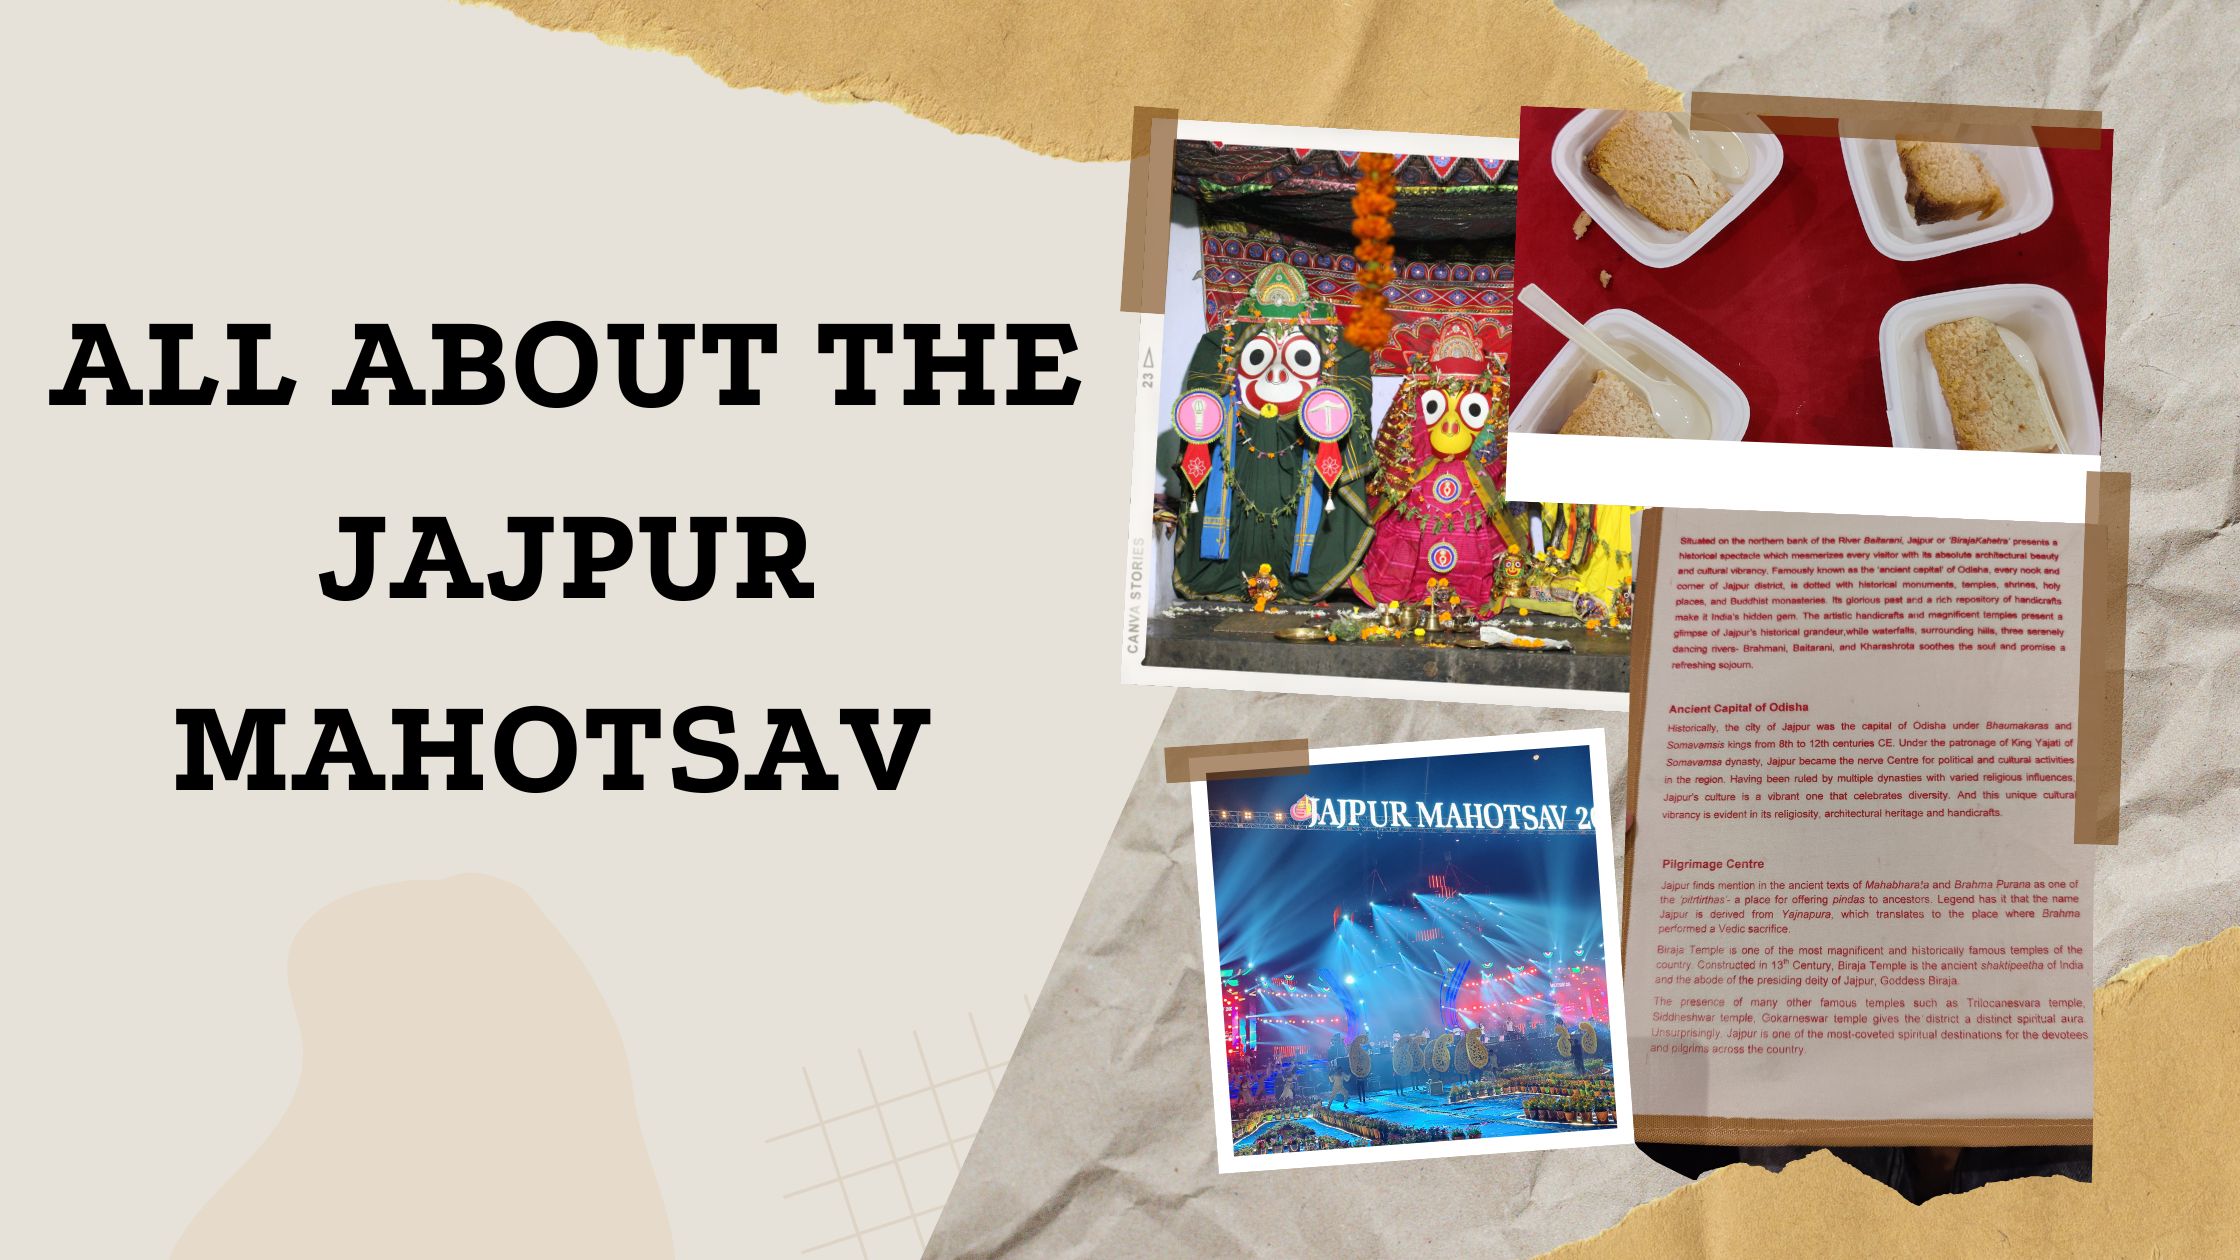 All about the Jajpur Mahotsav